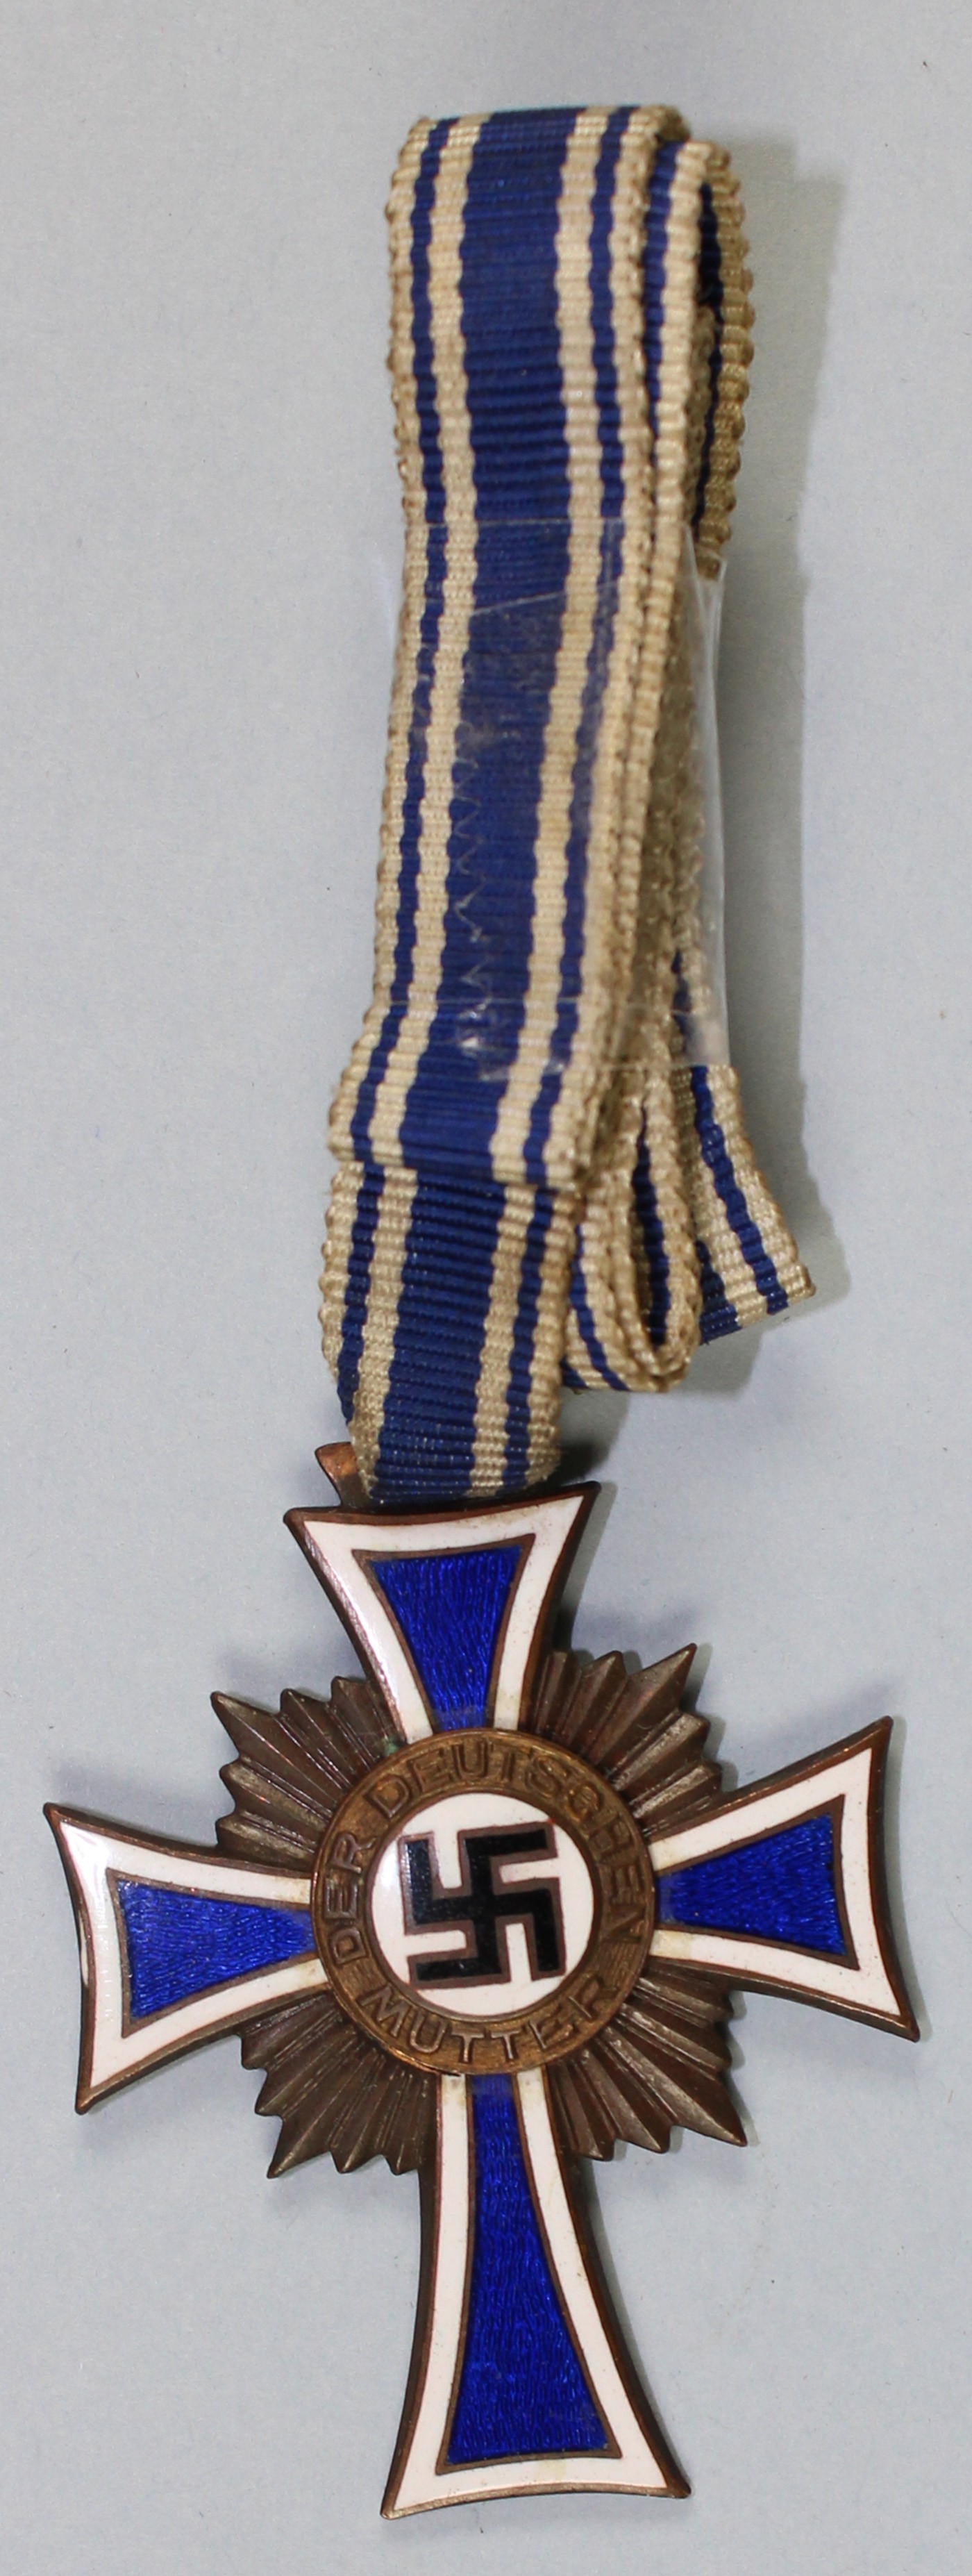 Ehrenkreuz der Mütter, 1938 (Museum Wolmirstedt RR-F)